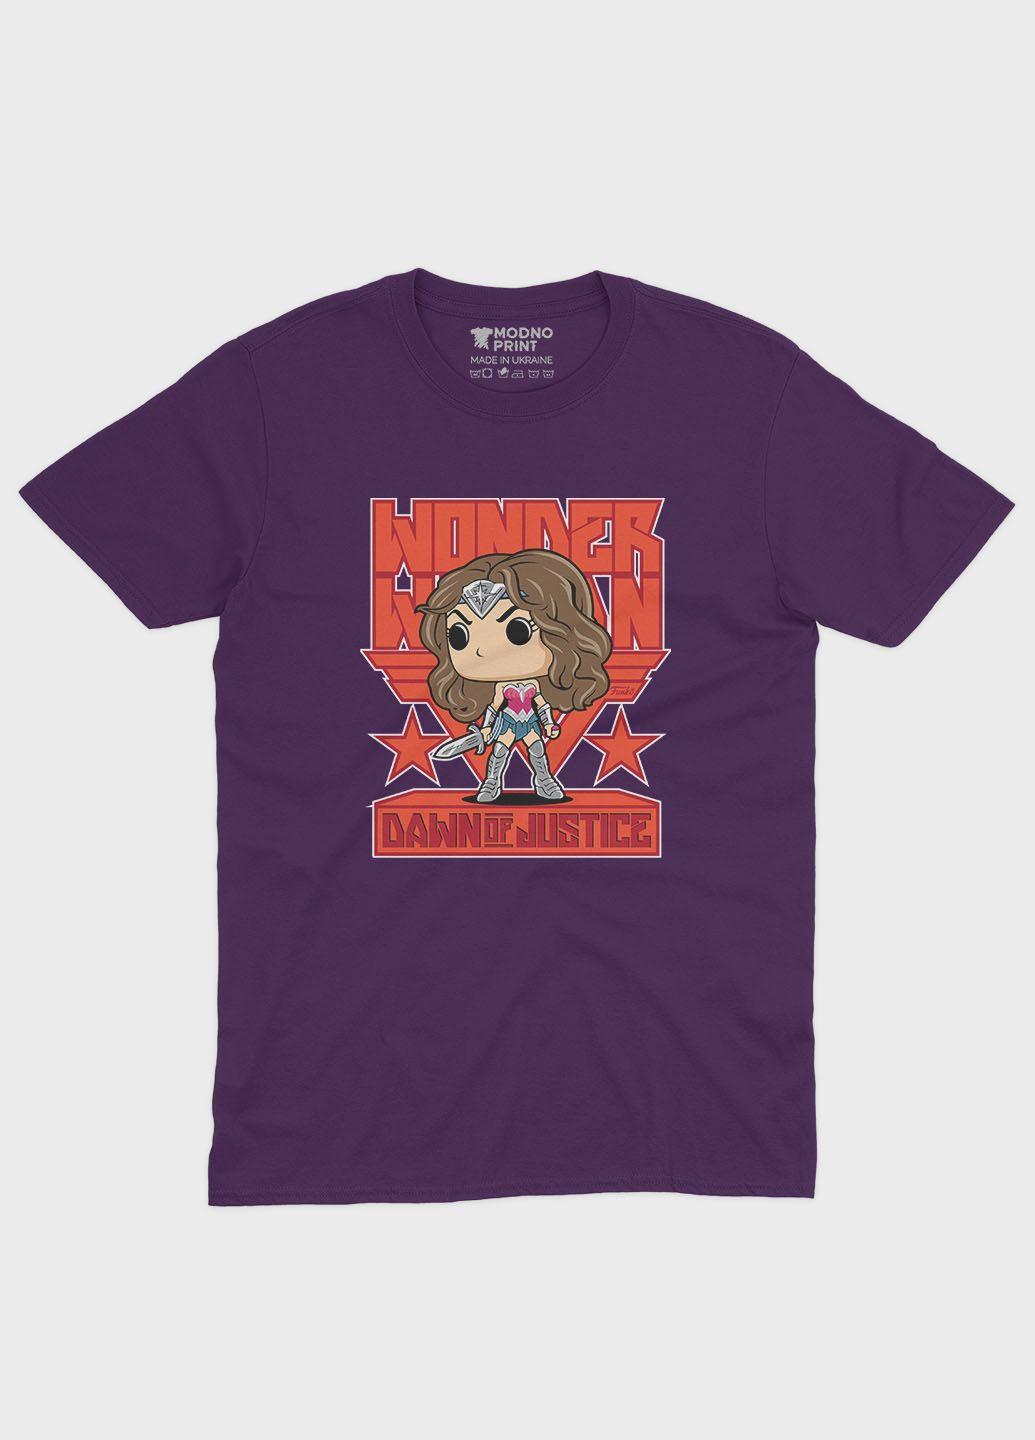 Фиолетовая демисезонная футболка для мальчика с принтом супергероя - чудо-женщина (ts001-1-dby-006-006-002-b) Modno